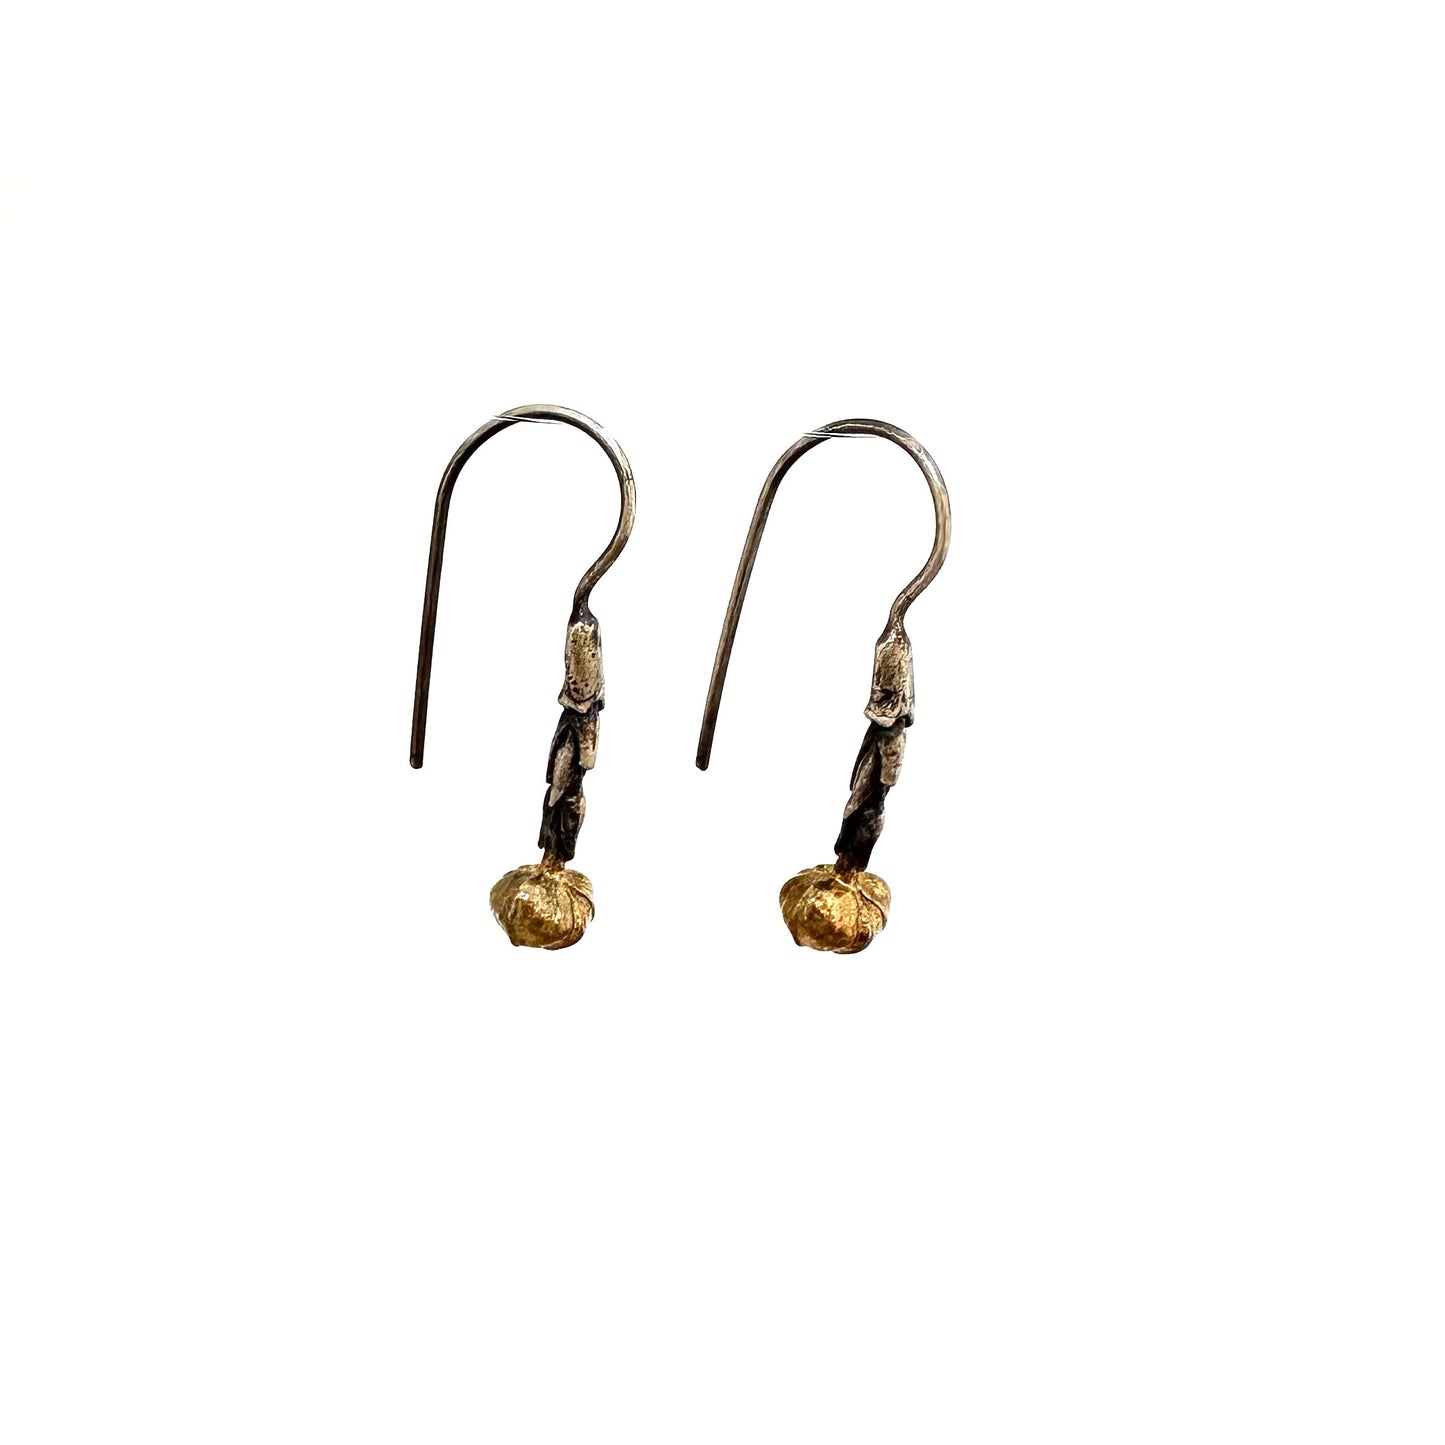 Hawthorn Earrings w/ 24k gold